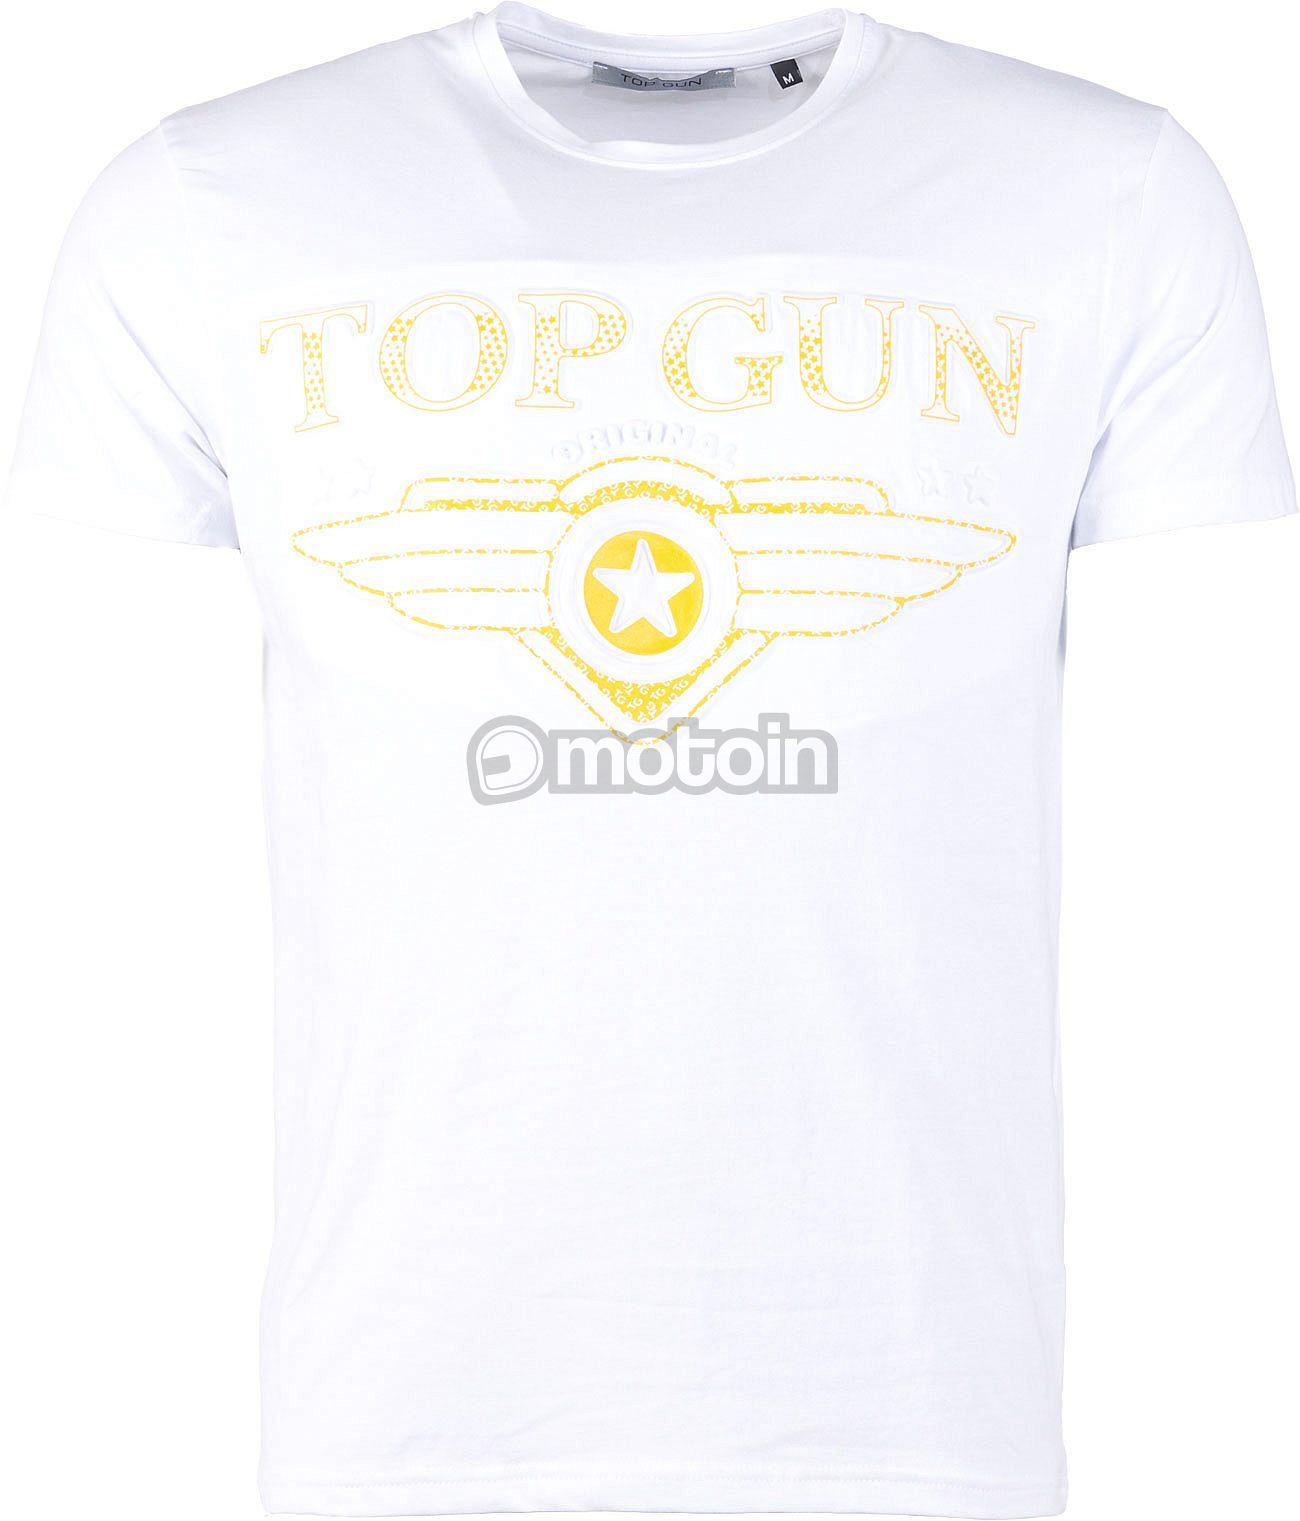 Top Gun Bling4U, T-shirt